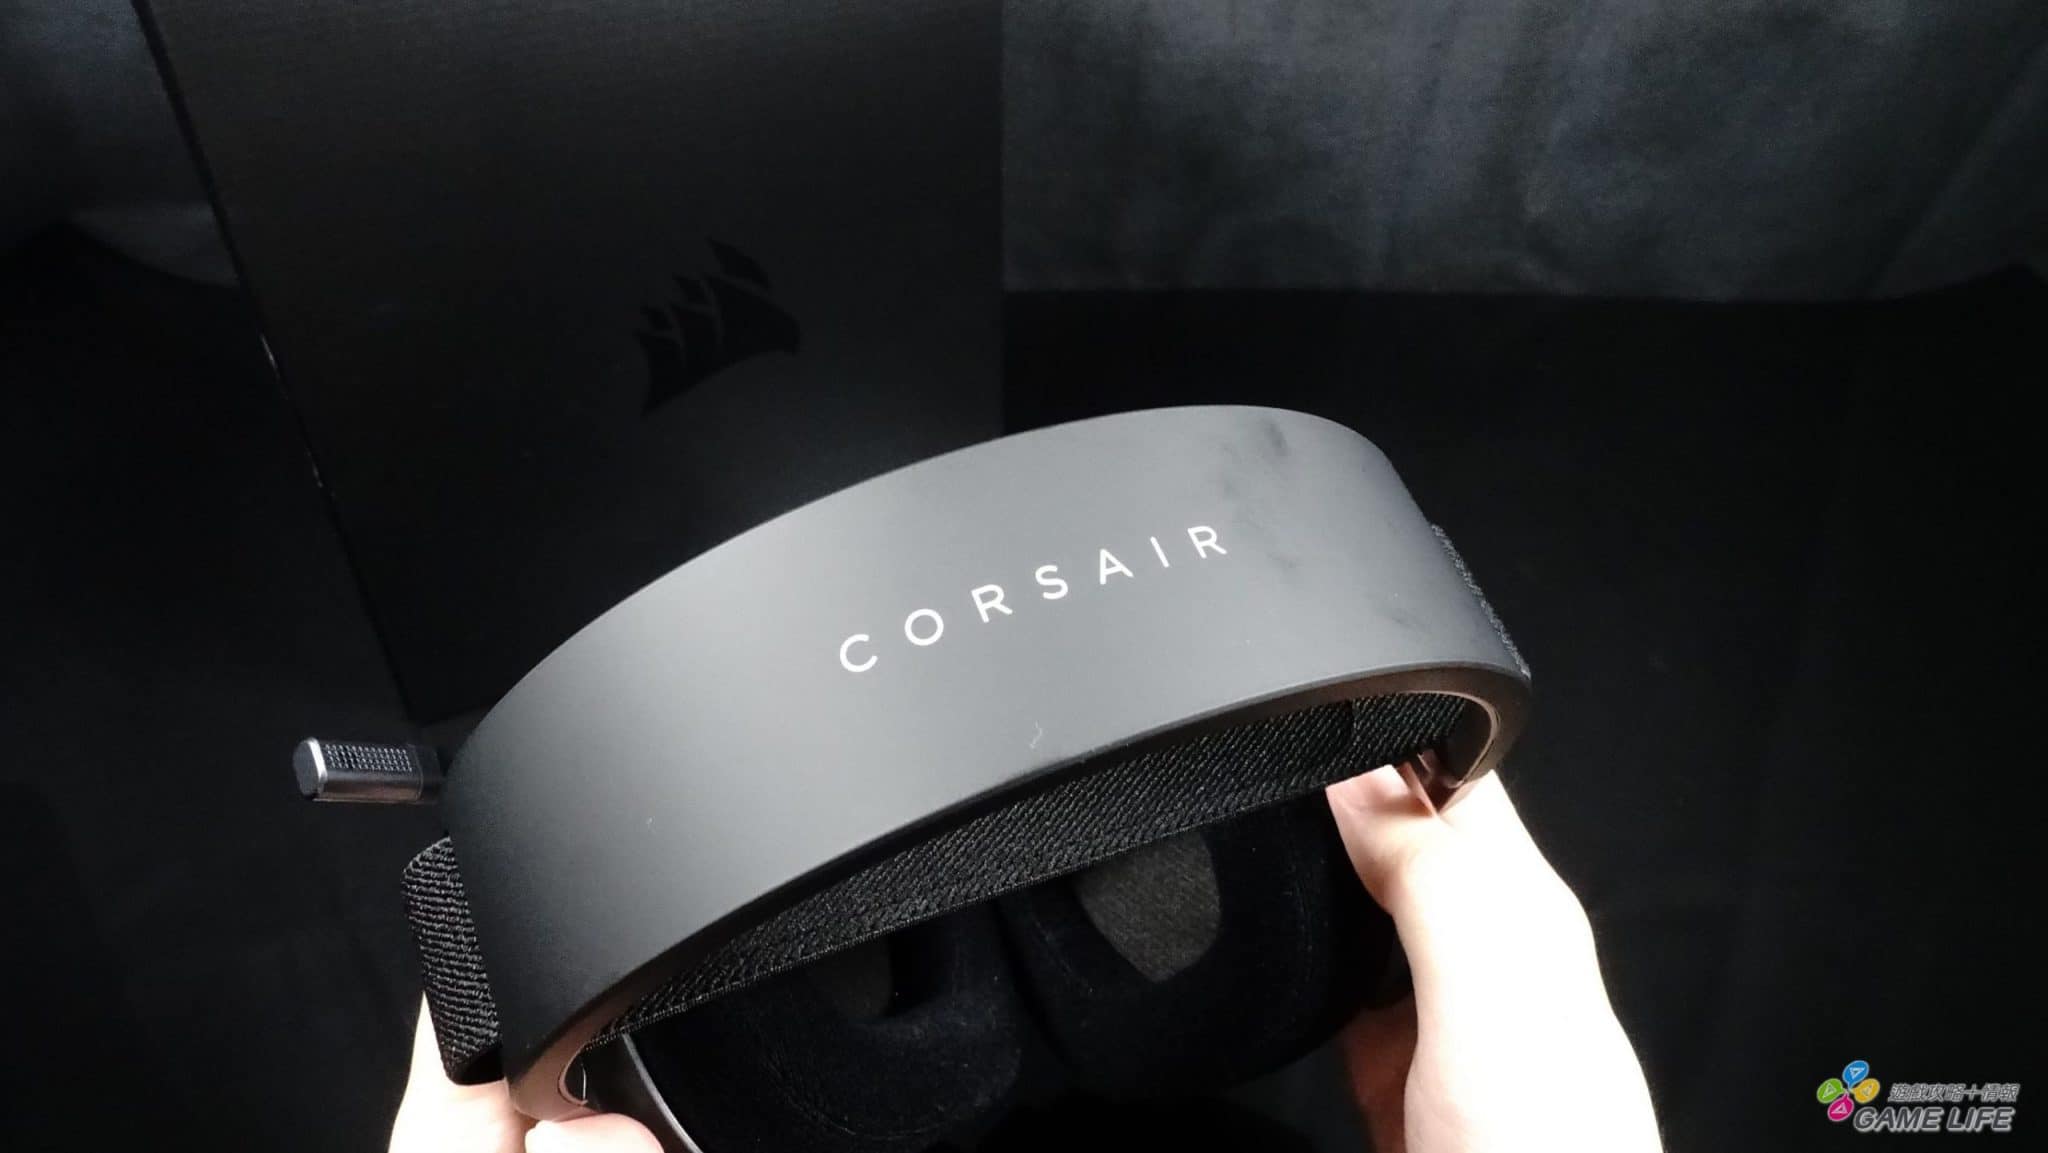 CORSAIR HS80 RGB 頭頂有明顯的標誌